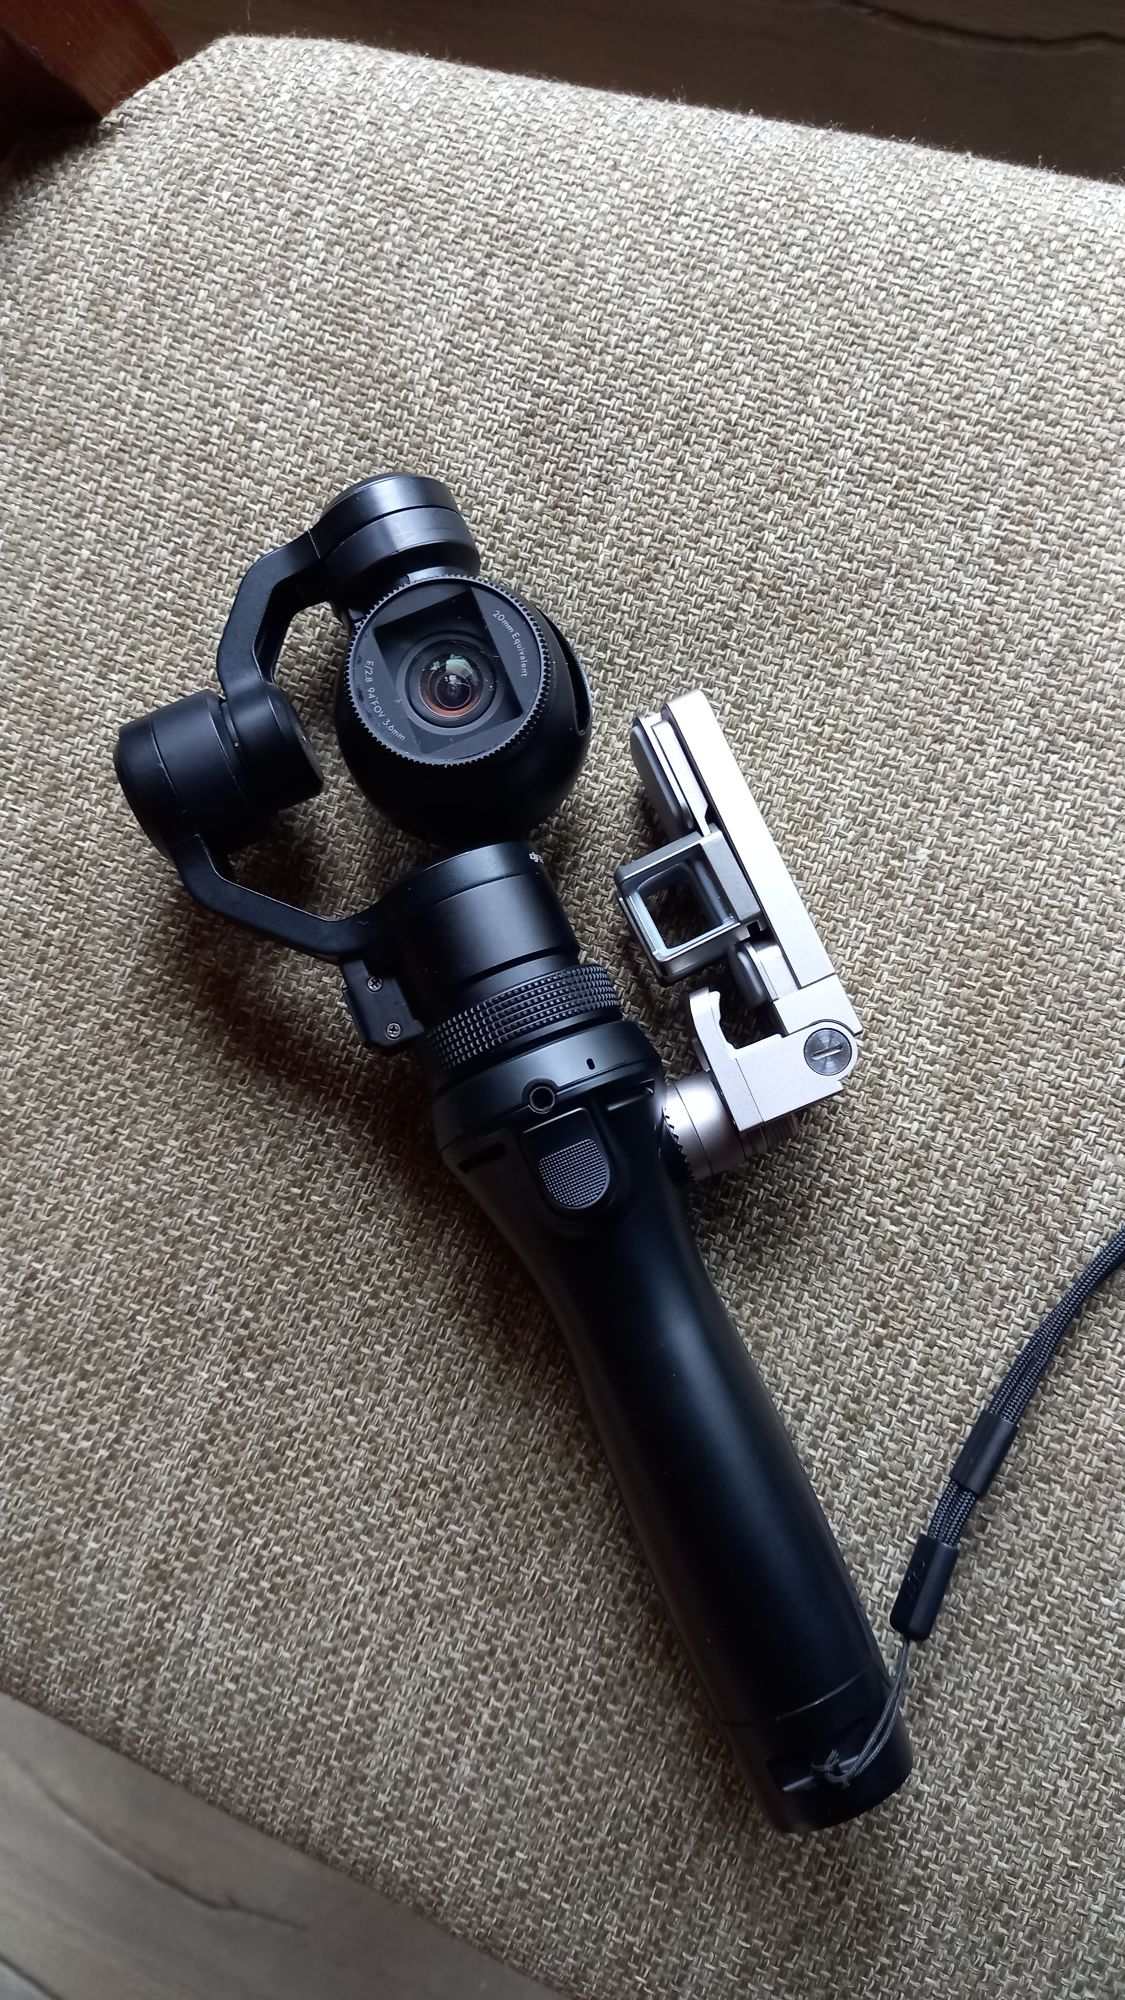 DJI Osmo 4k Gimbal Camera